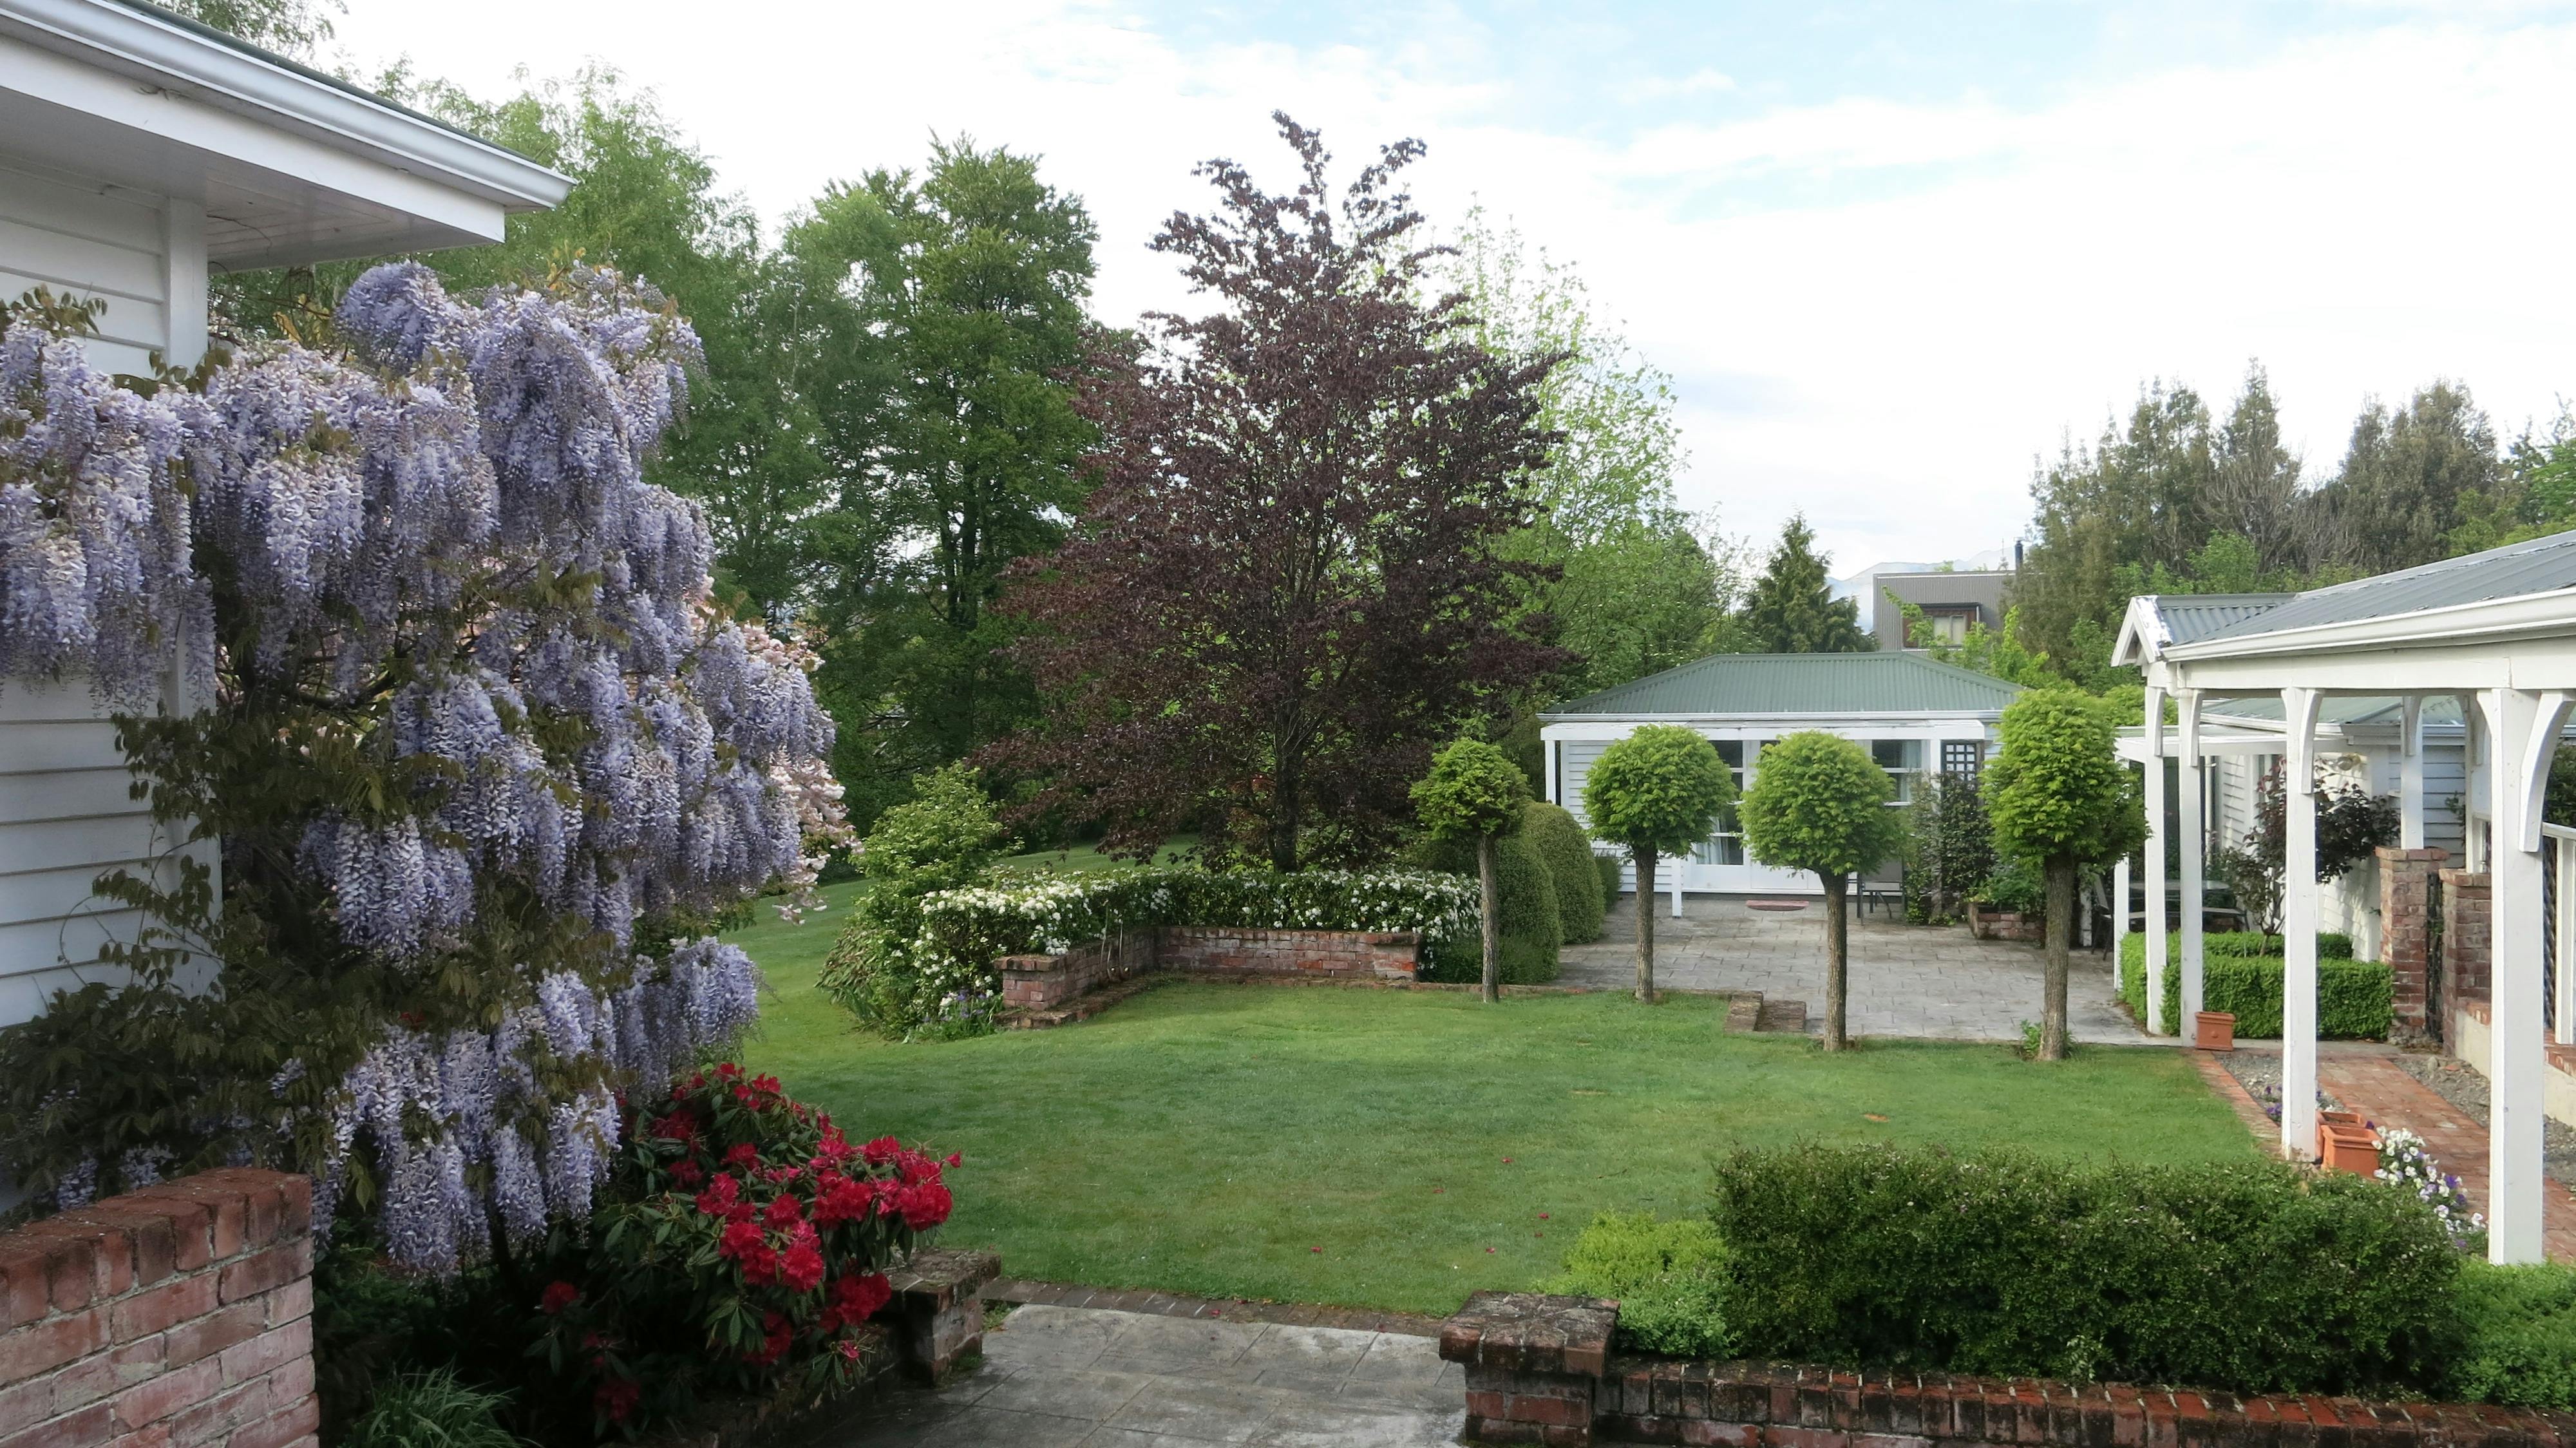 Extensive gardens in Spring at Cheltenham House